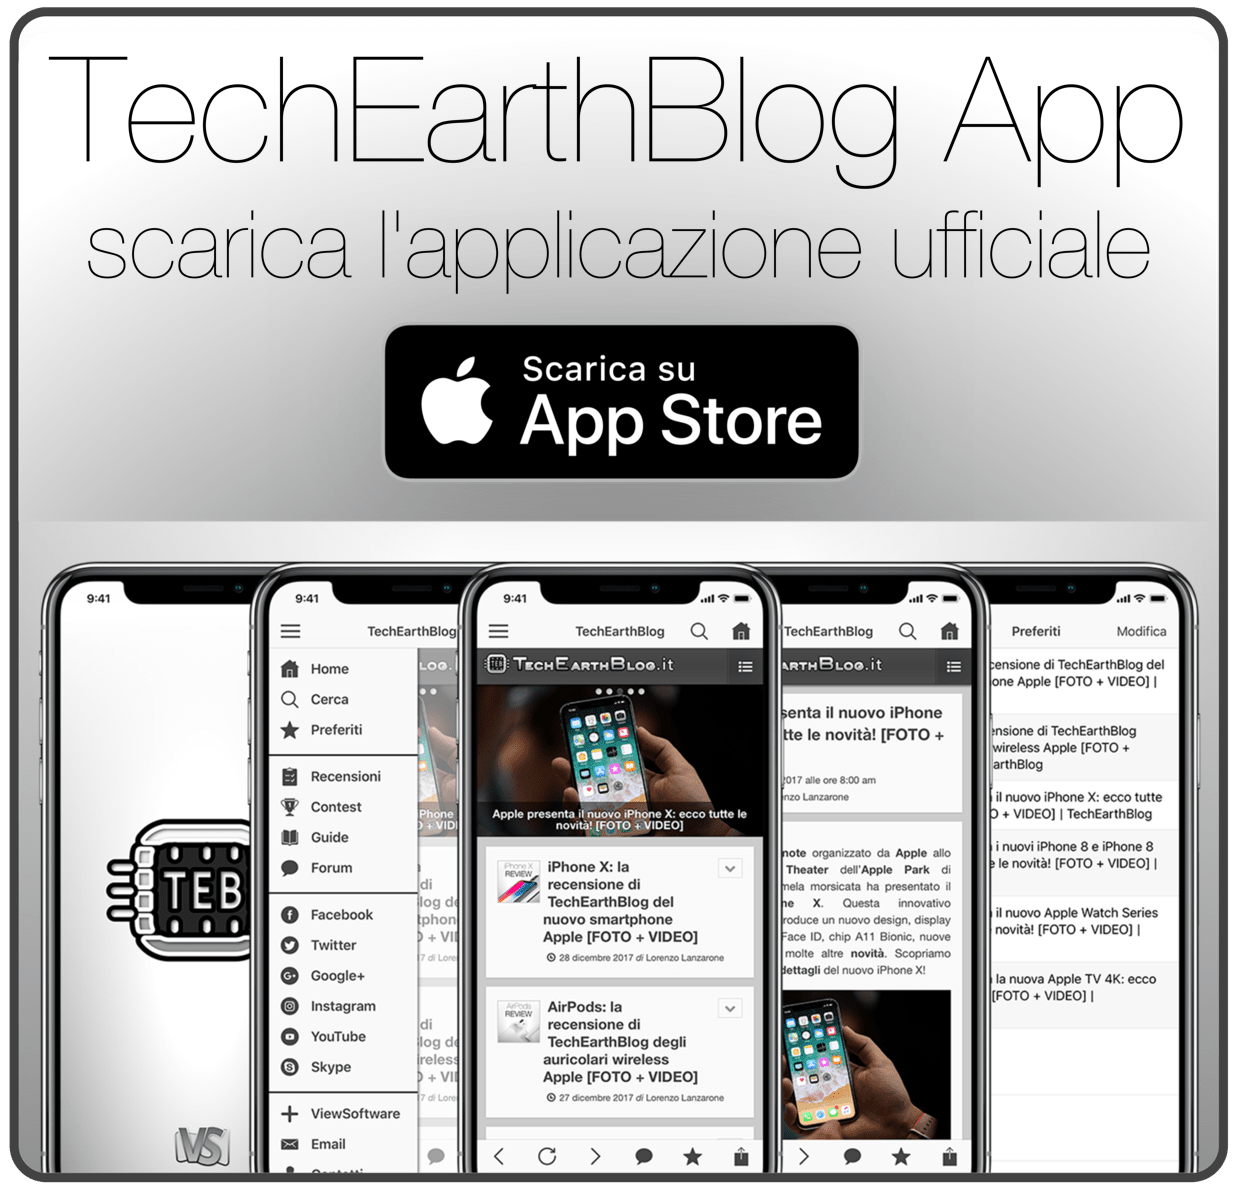 TechEarthBlog App 3.0: arriva su App Store la nuova app di TechEarthBlog per iPhone e iPad!